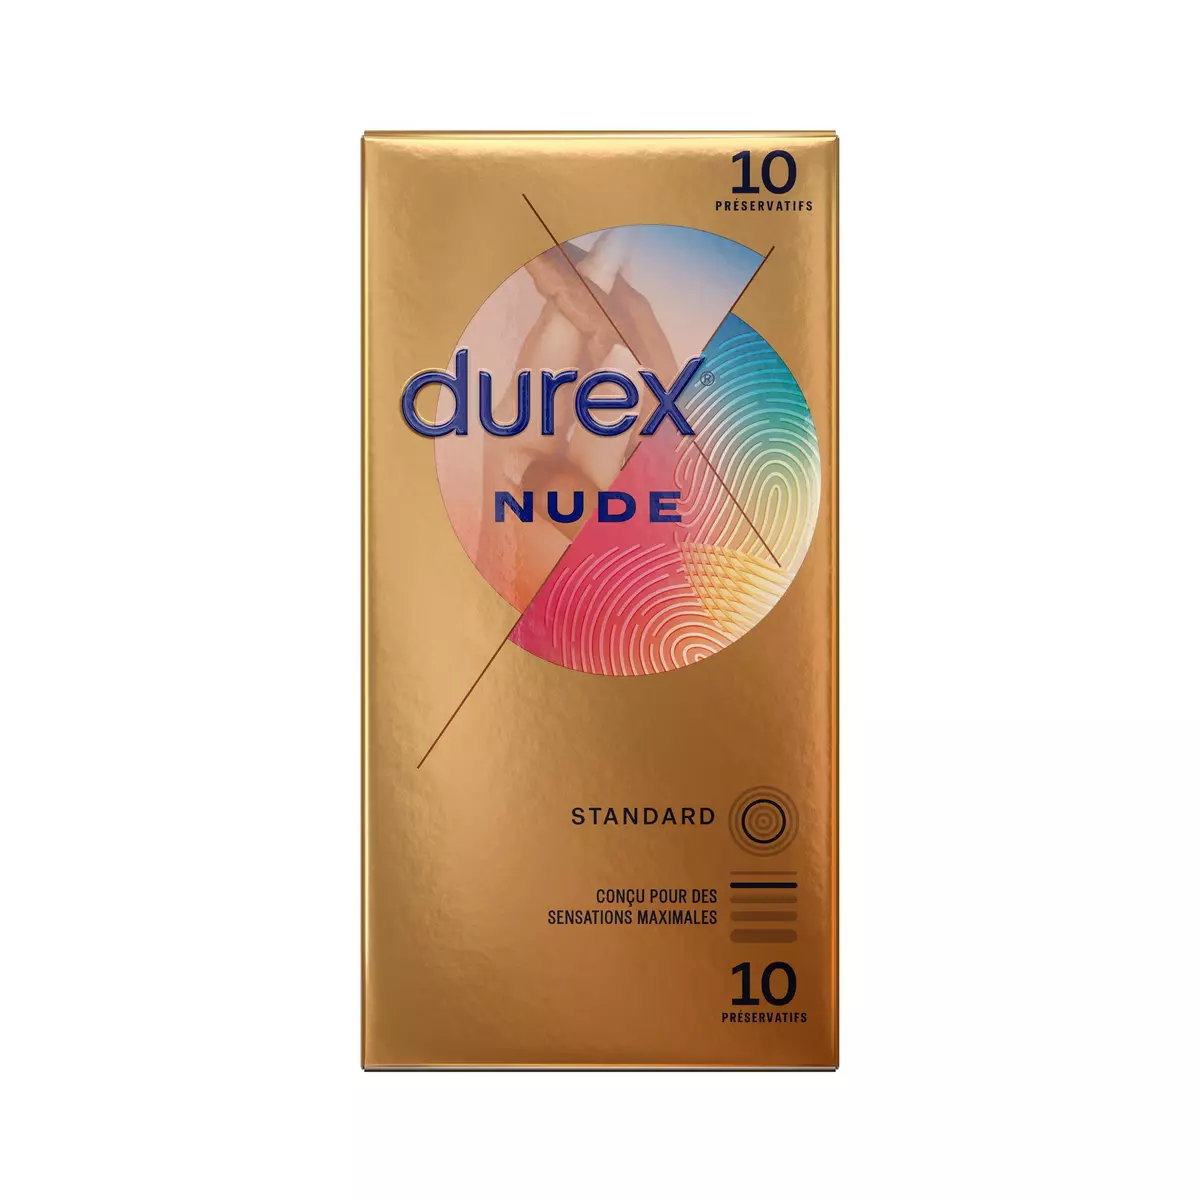 DUREX Nude Préservatifs standard sensations maximales 10 préservatifs